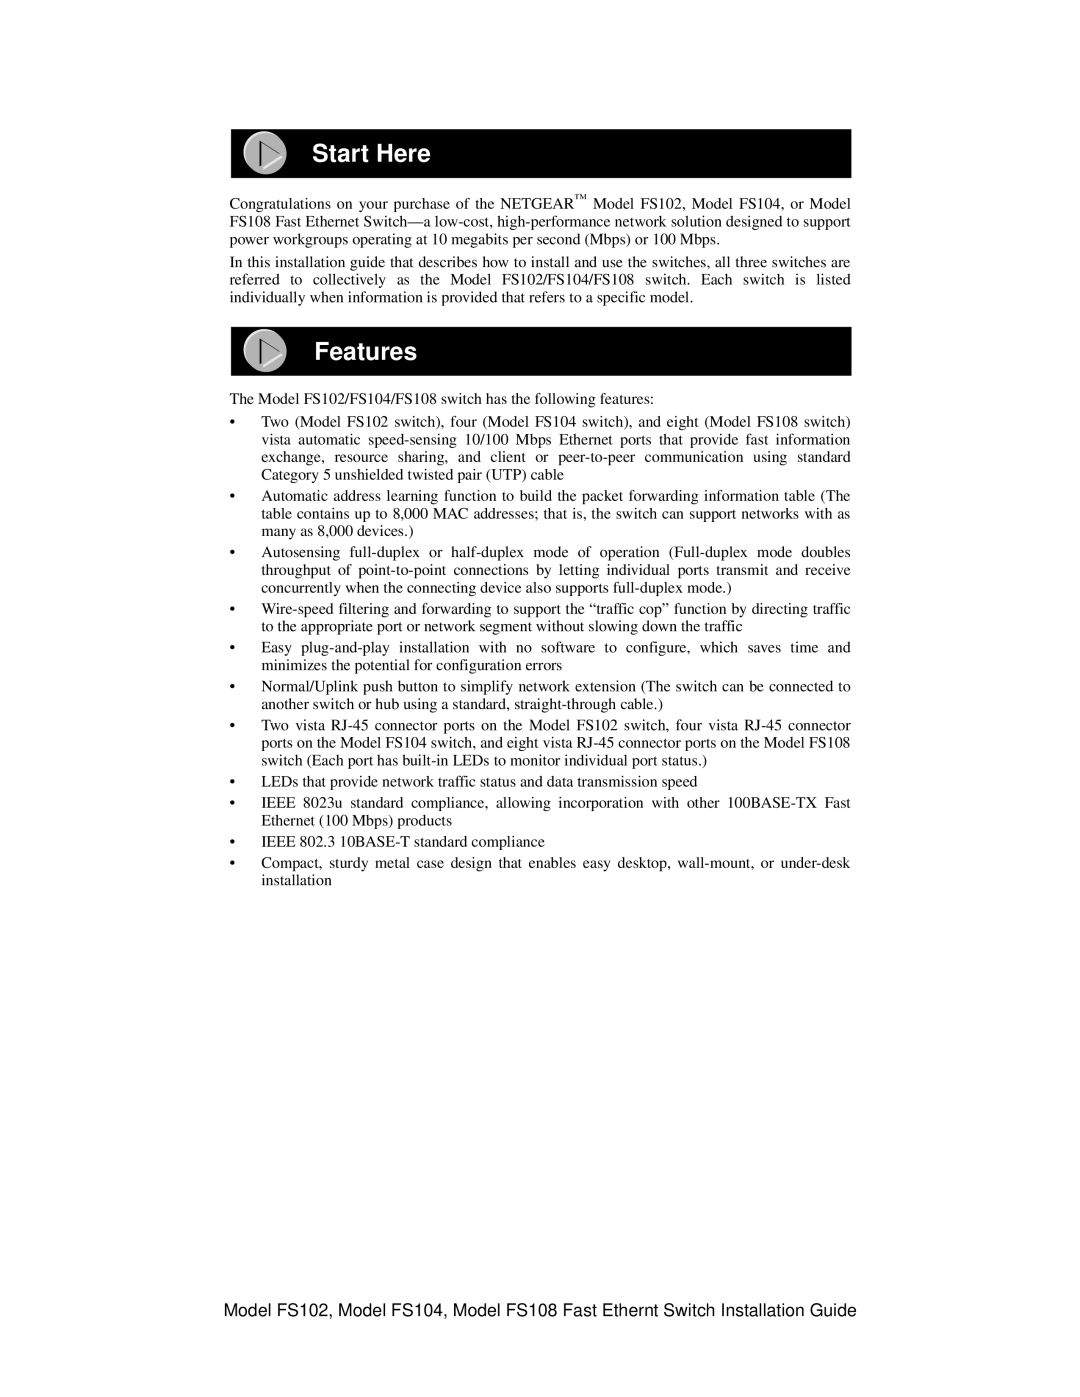 NETGEAR FS102 manual Start Here, Features 